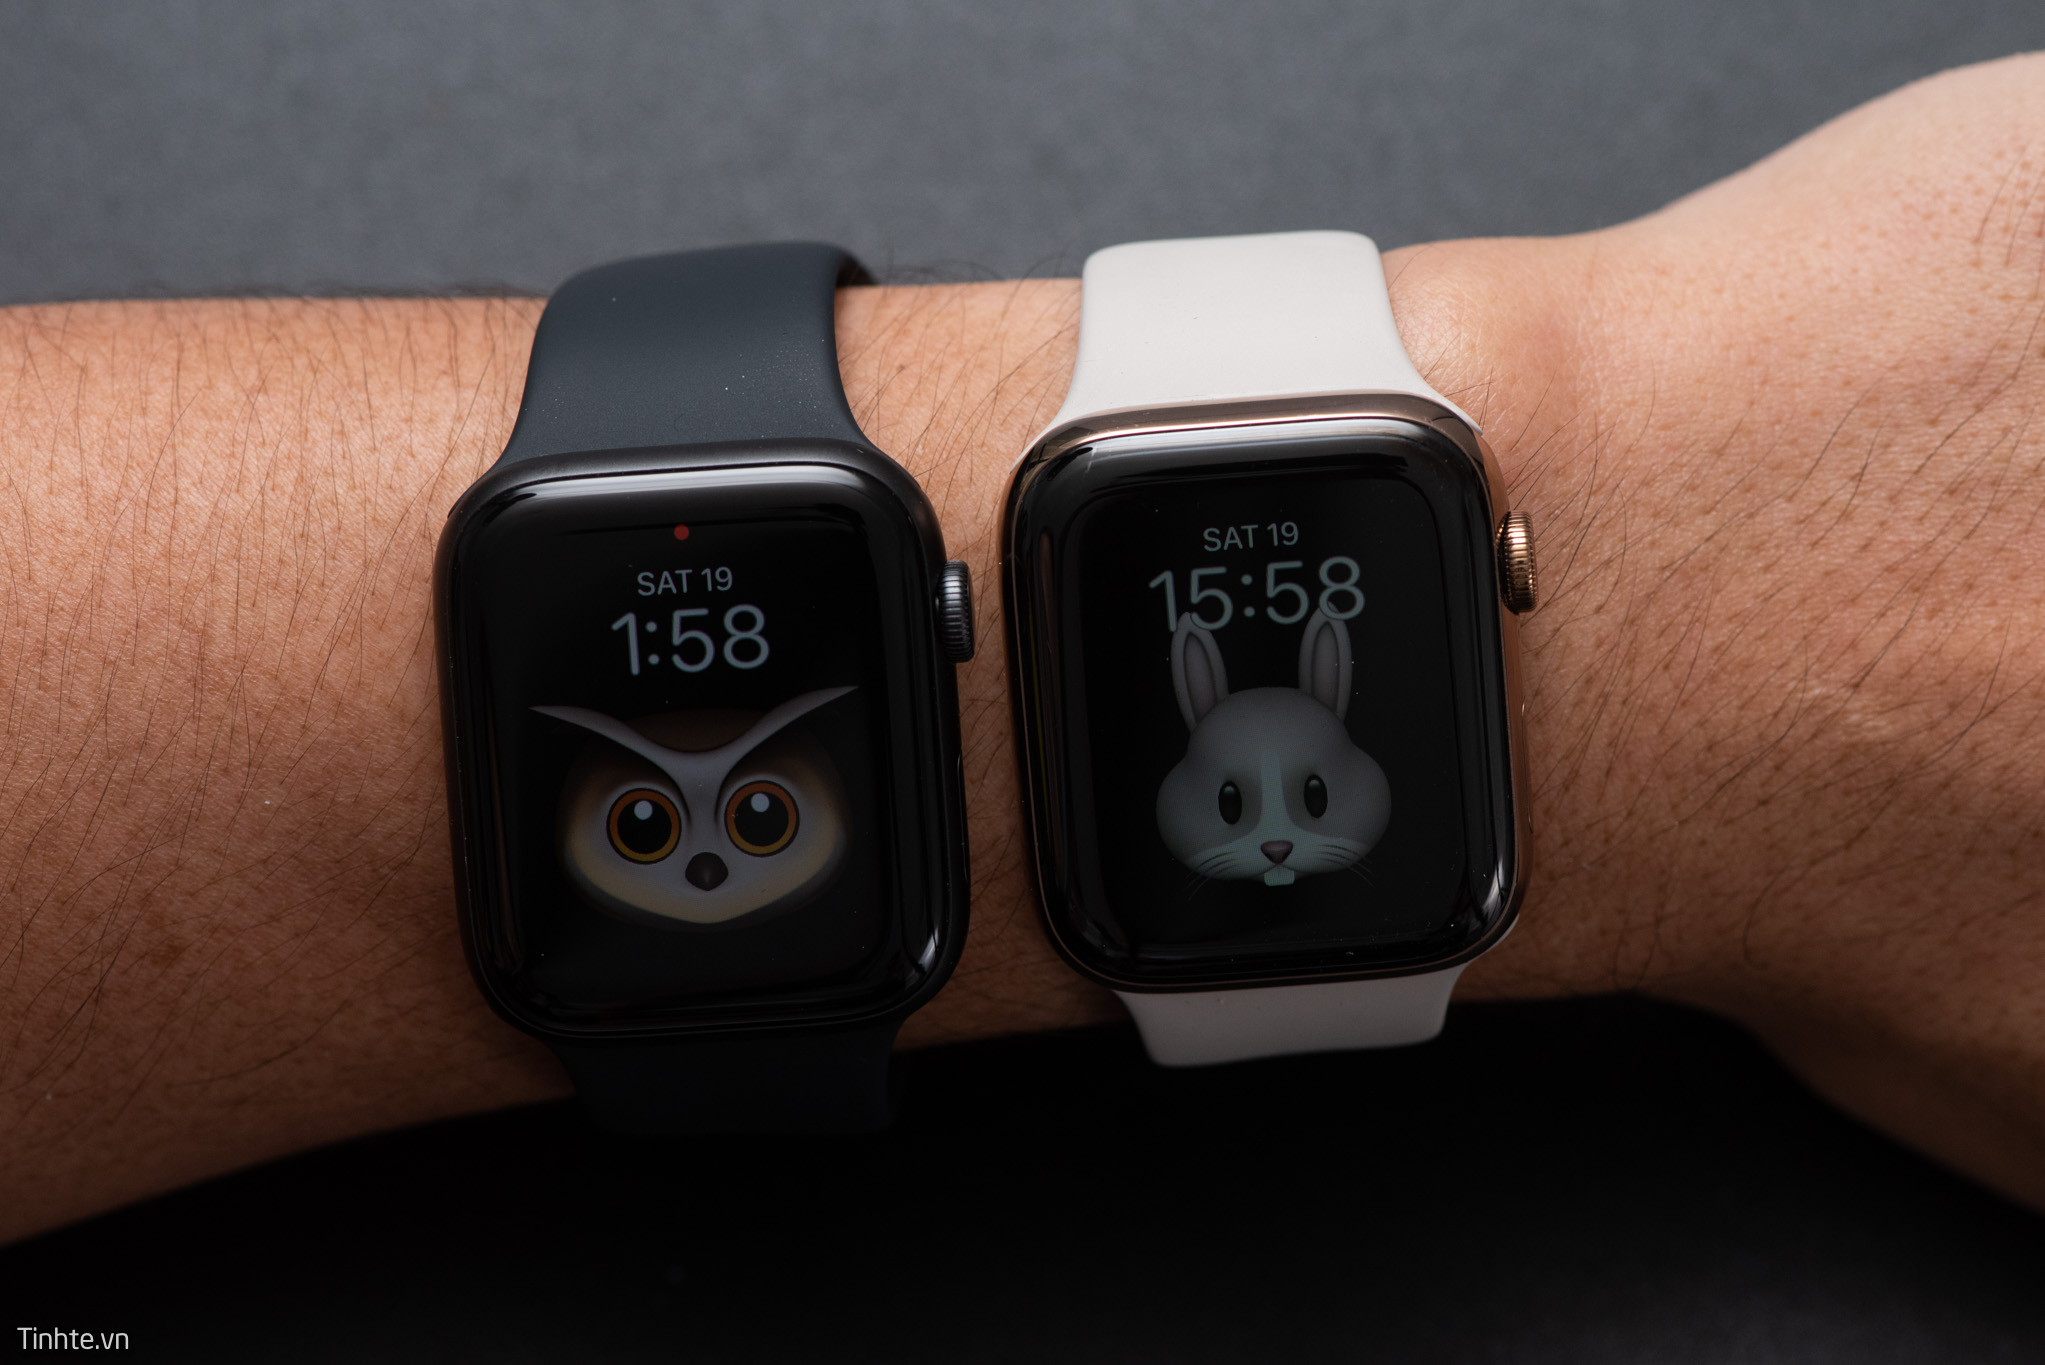 Đây là tất cả những mặt đồng hồ mới đi cùng với Apple Watch Series 5